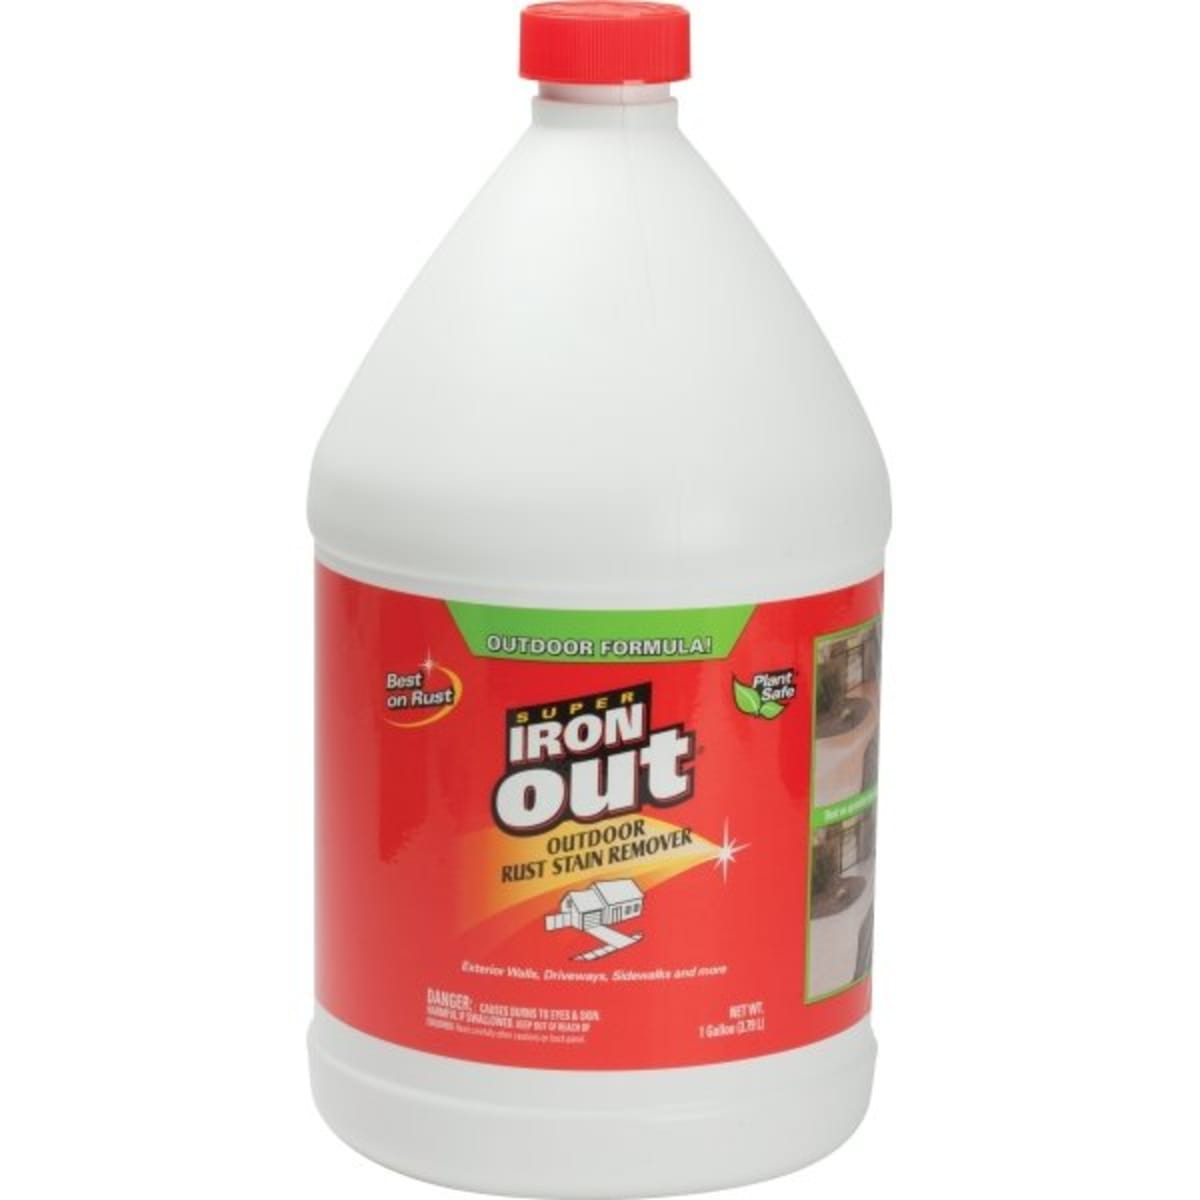 outdoor urine neutralizer